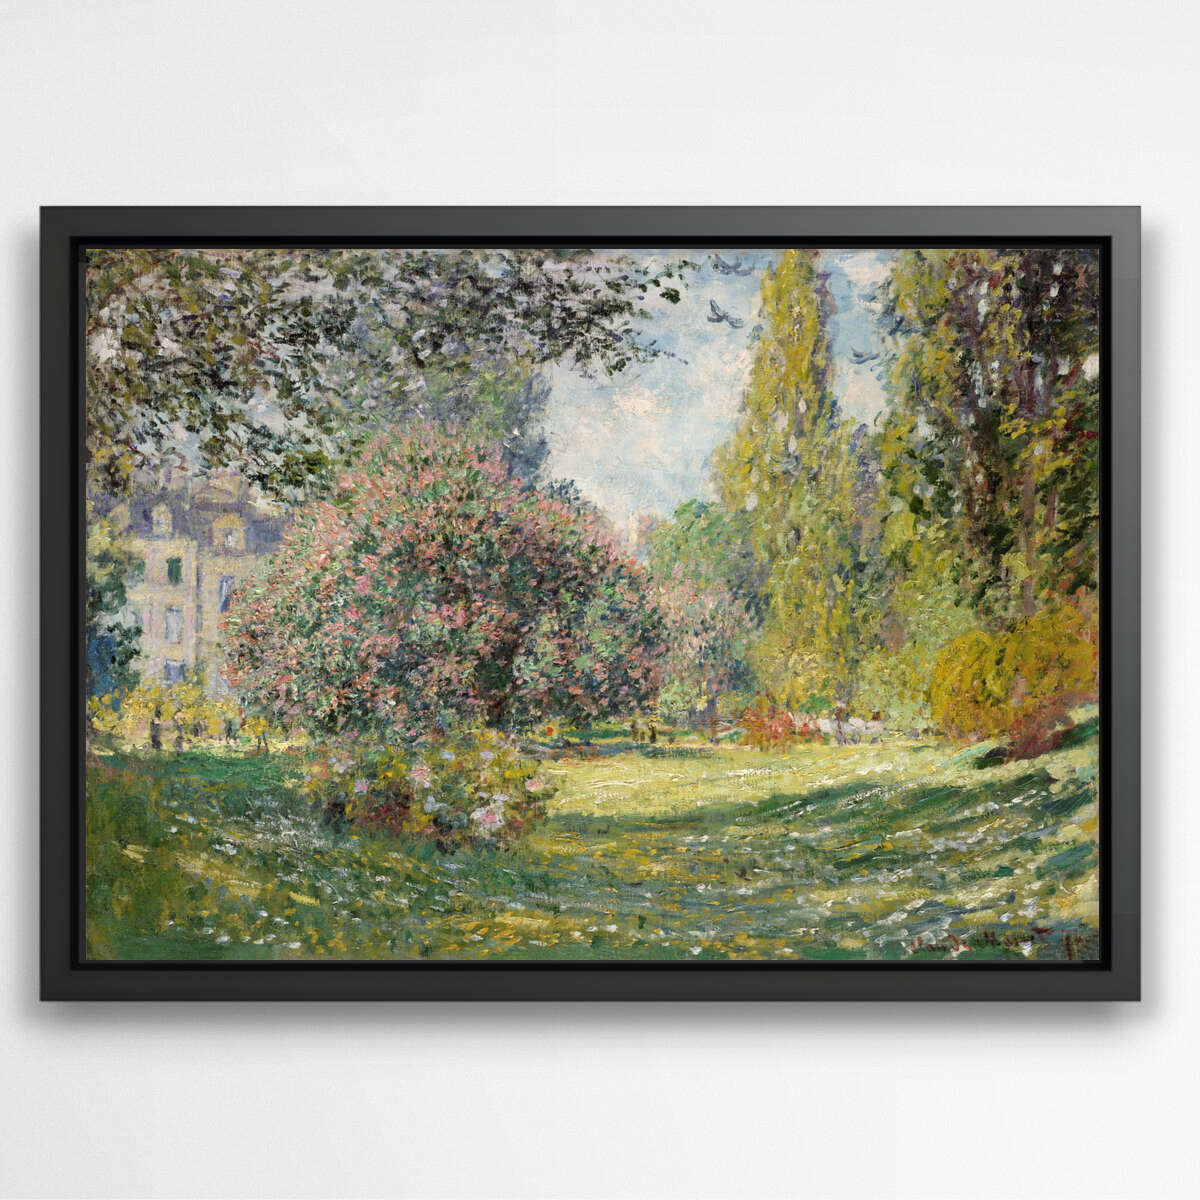 Landscape The Parc Monceau by Claude Monet | Claude Monet Wall Art Prints - The Canvas Hive